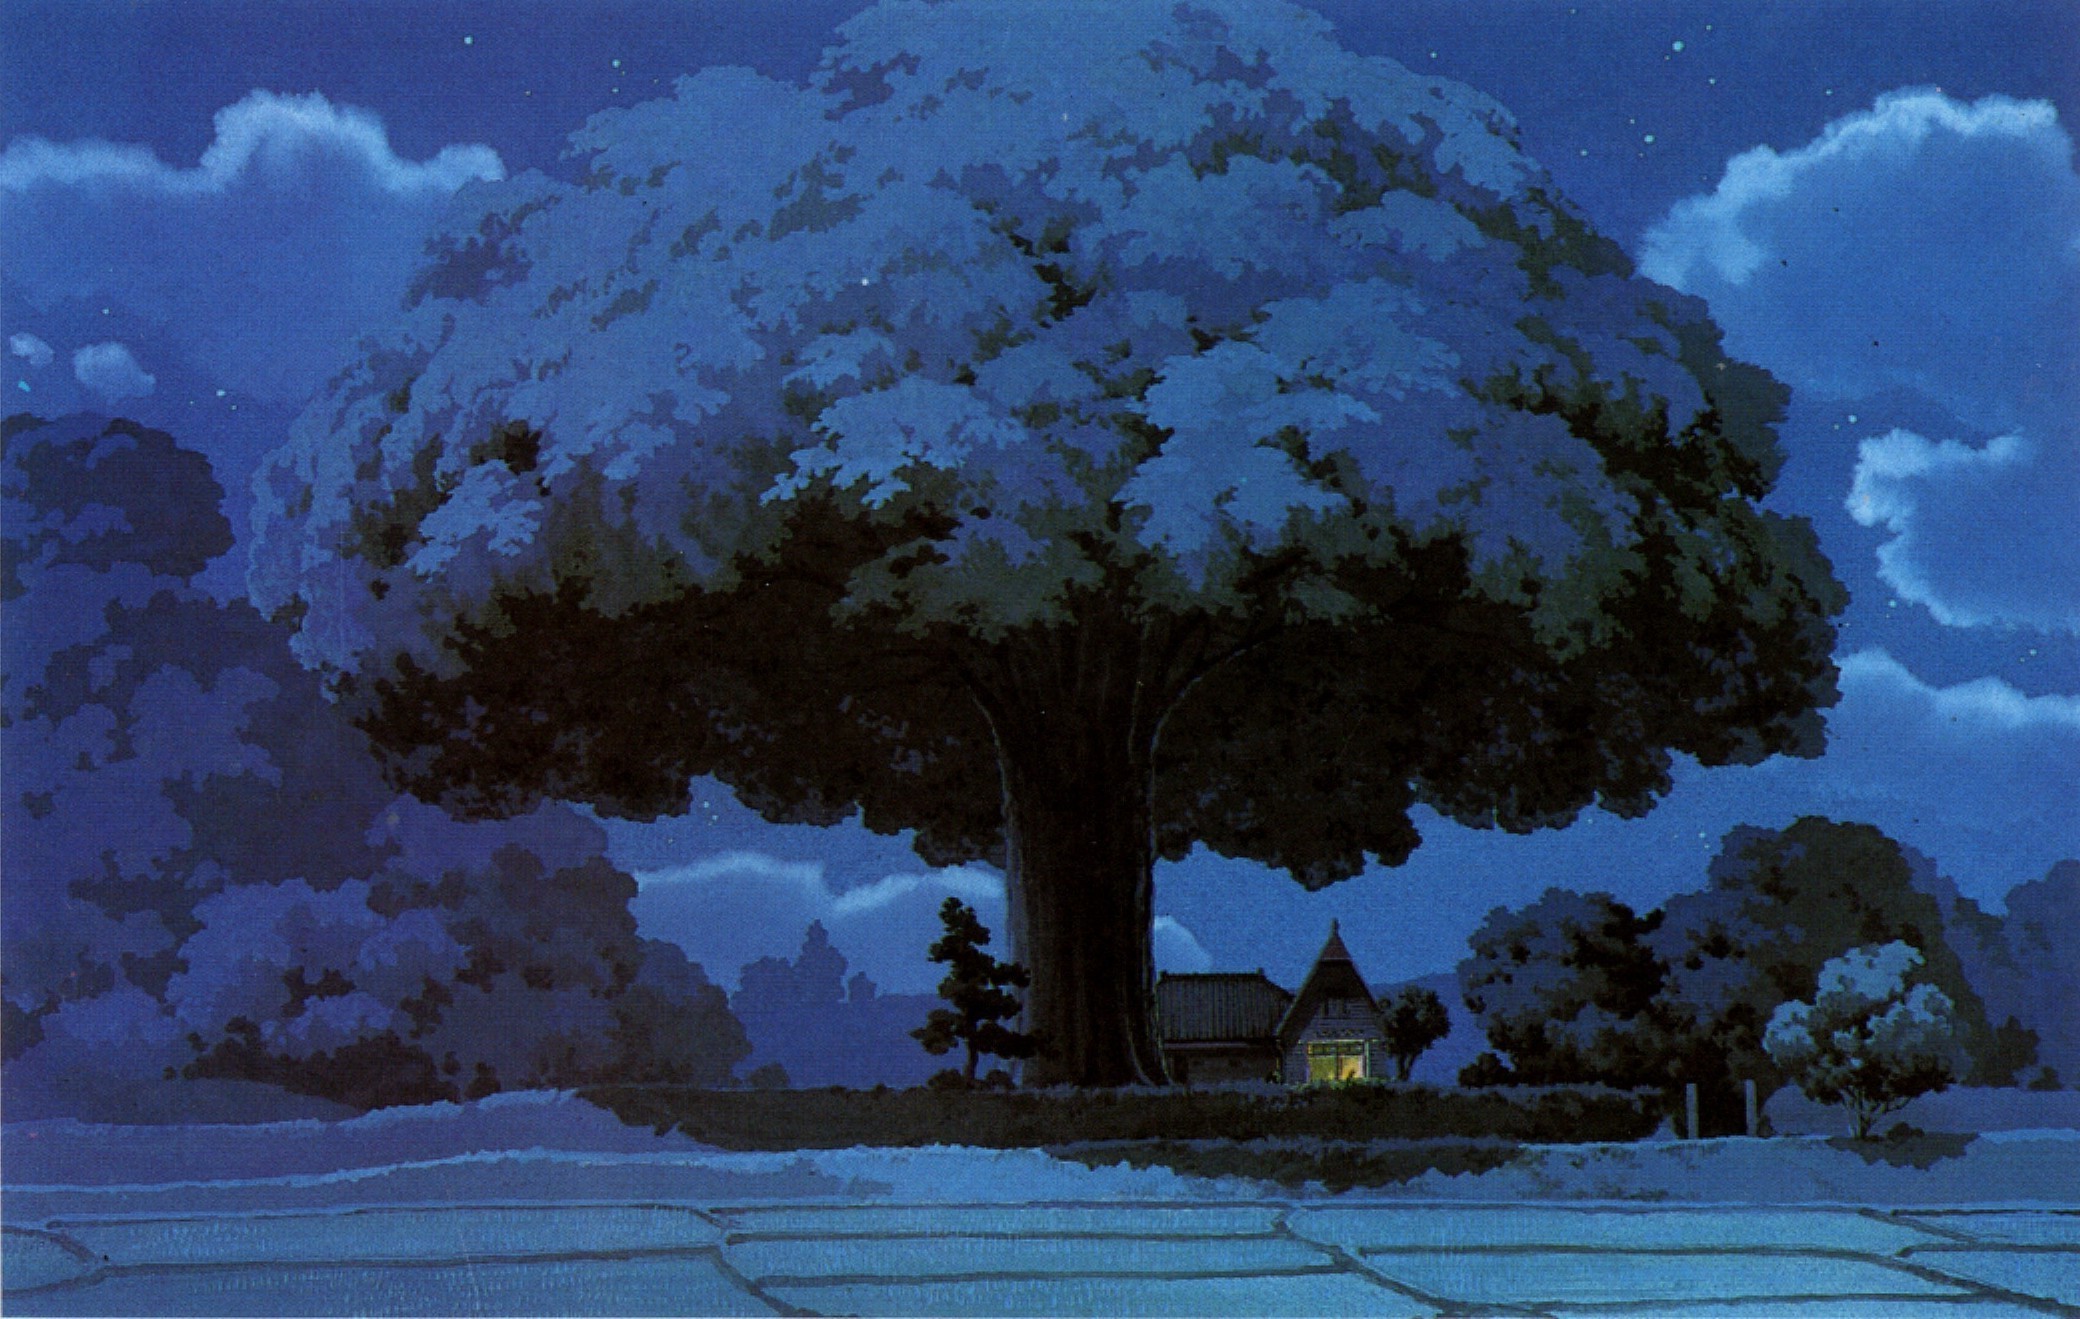 Download 21 studio-ghibli-dual-monitor-wallpaper Studio-Ghibli-Wallpaper-Inspirational-Wallpaper-Studio-.jpg